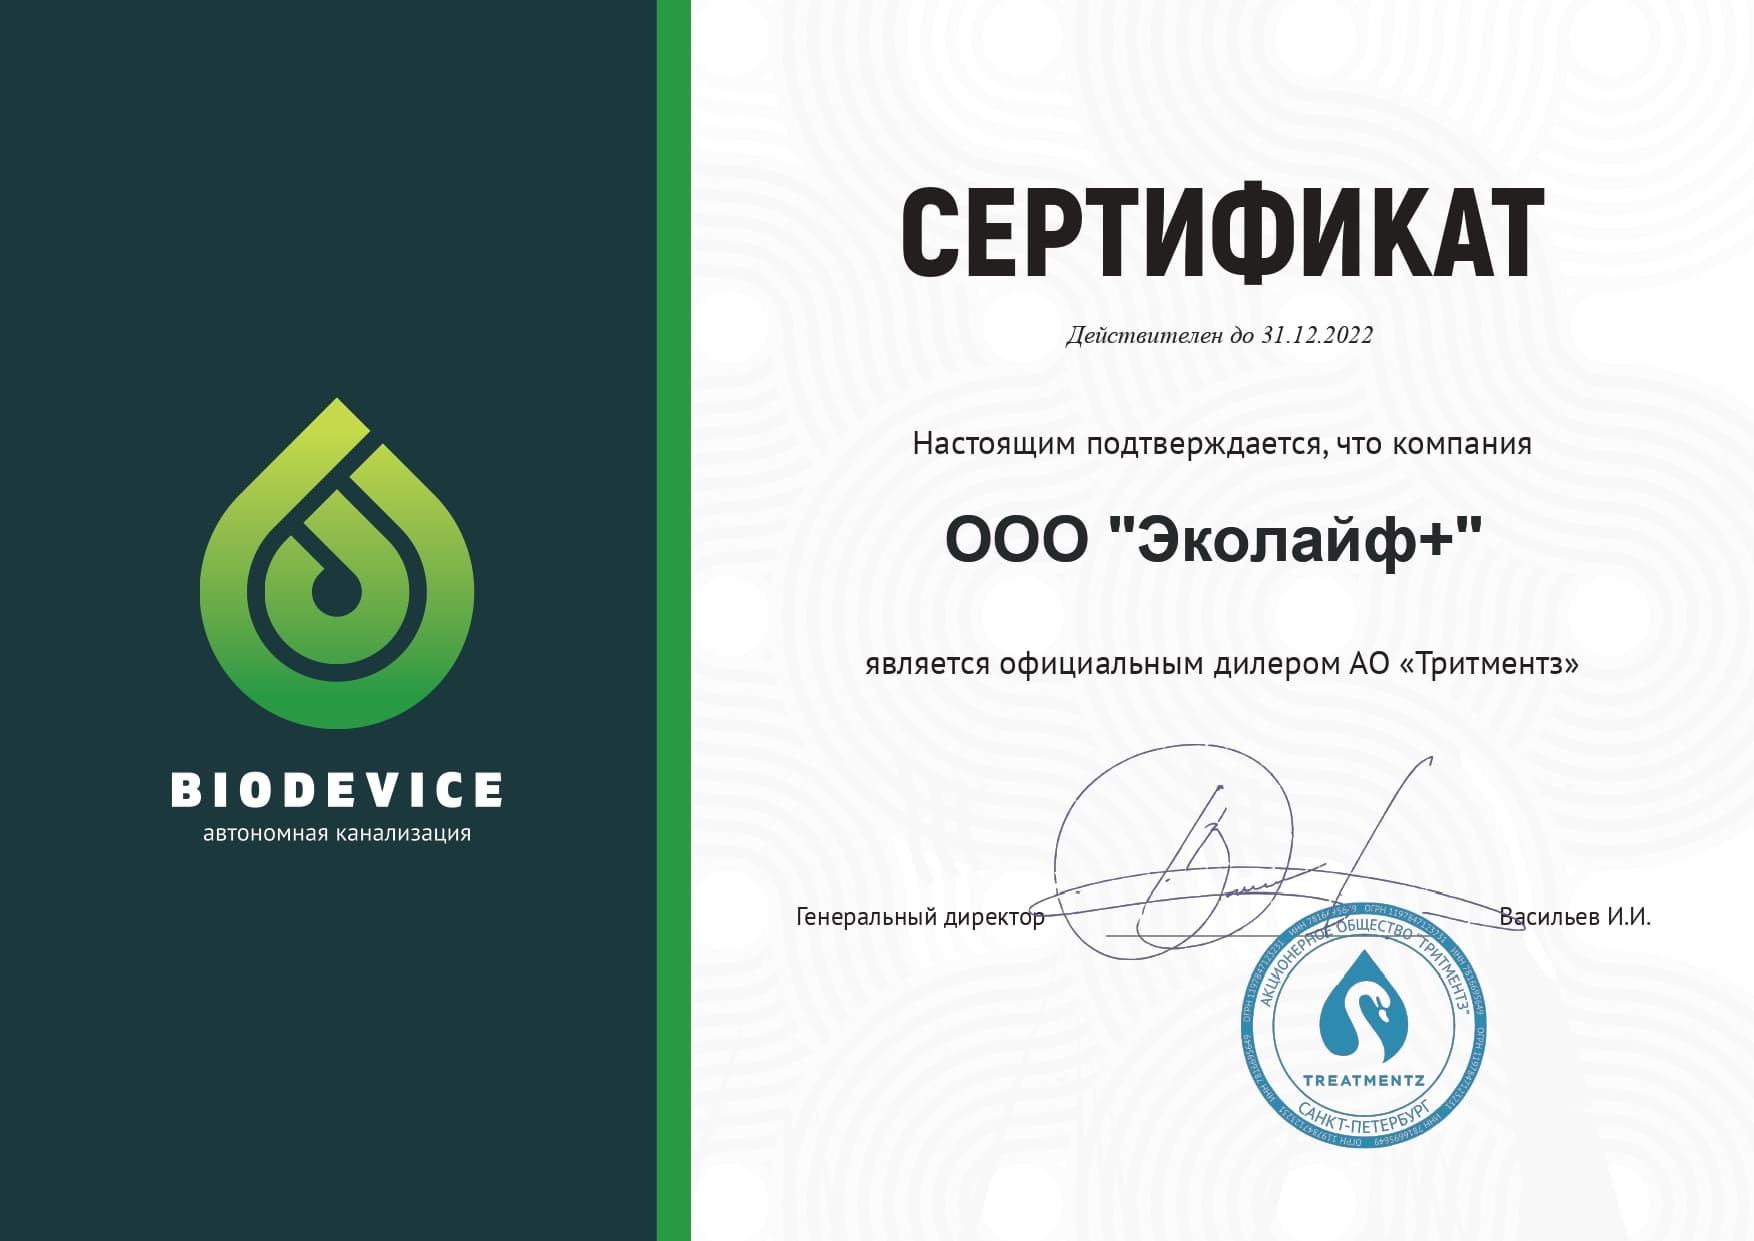 Сертификат дилера Биодевайс 2022